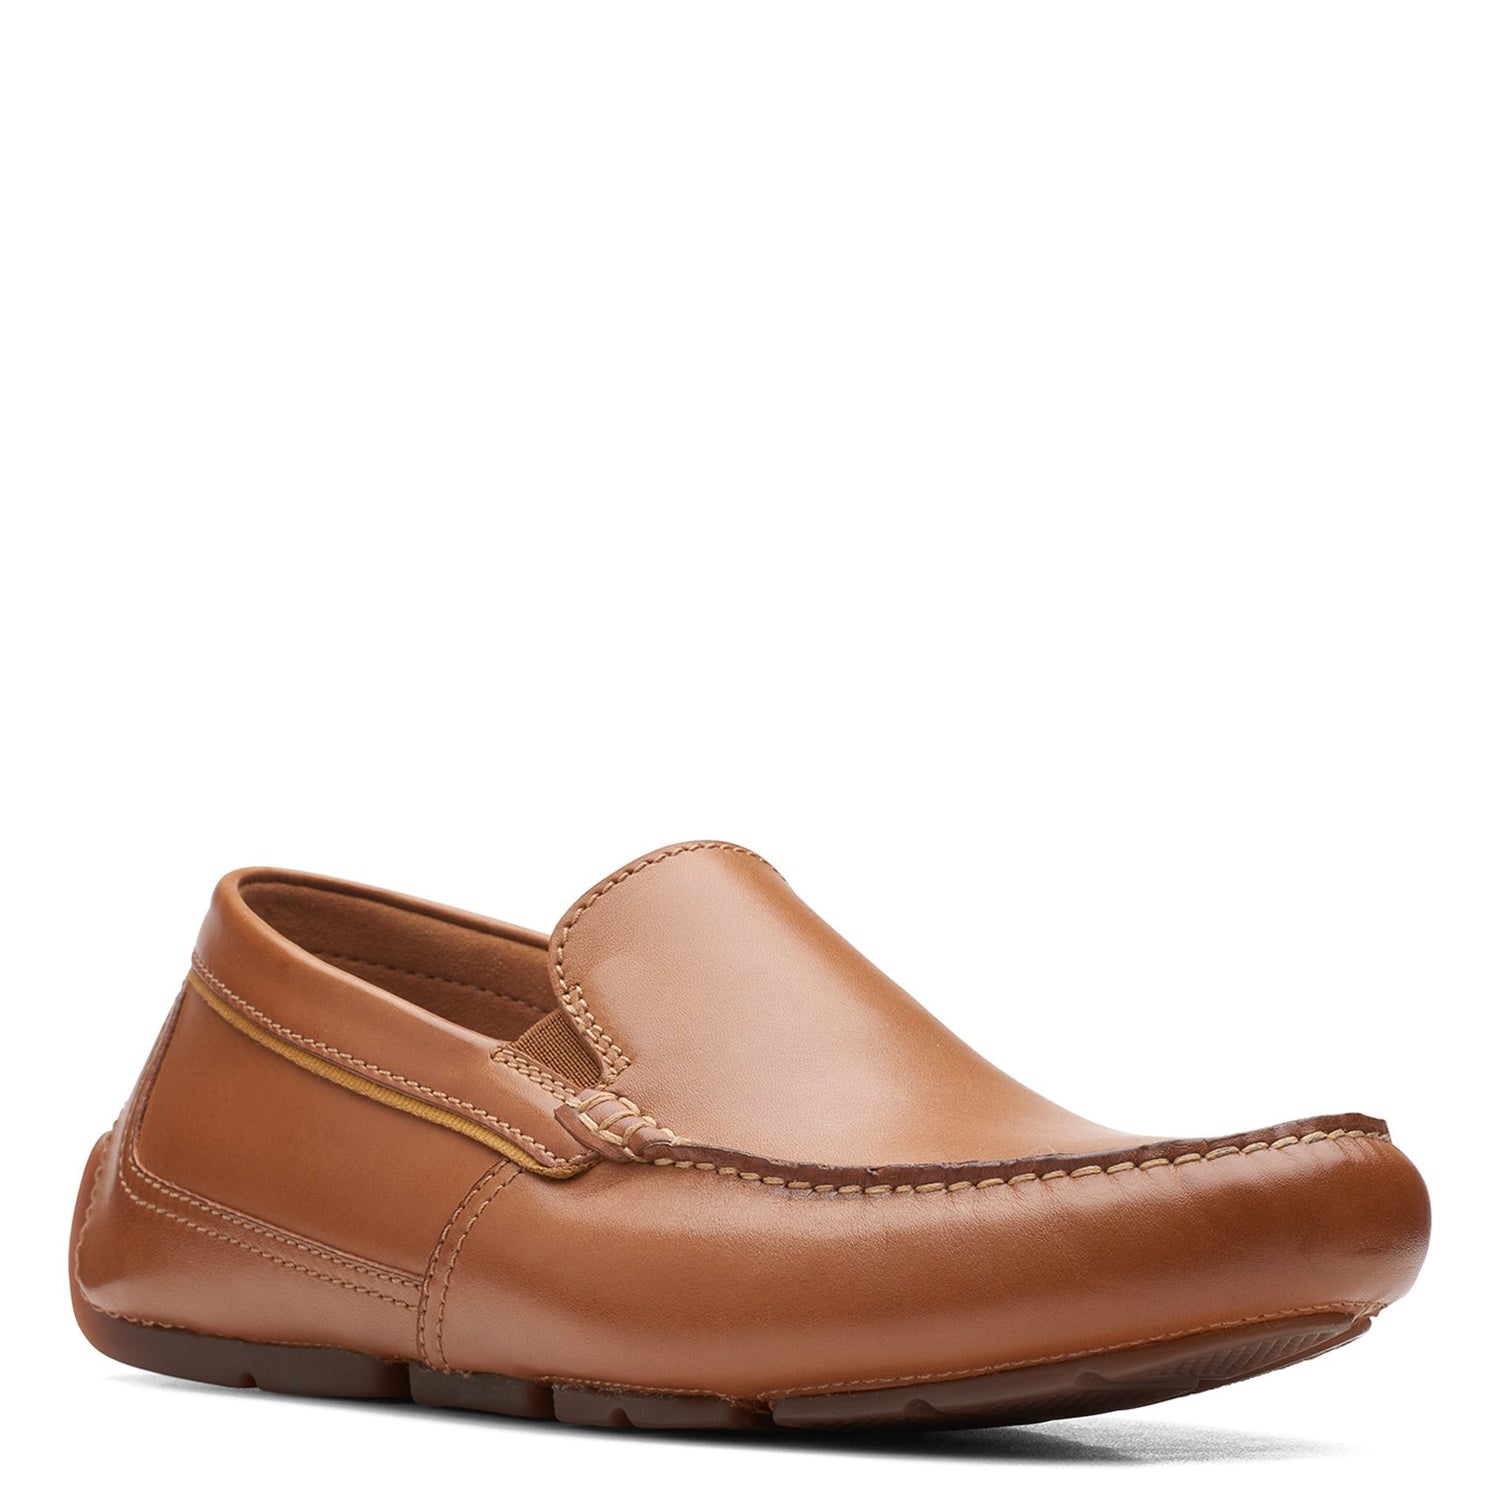 Peltz Shoes  Men's Clarks Markman Plain Loafer TAN 26163544